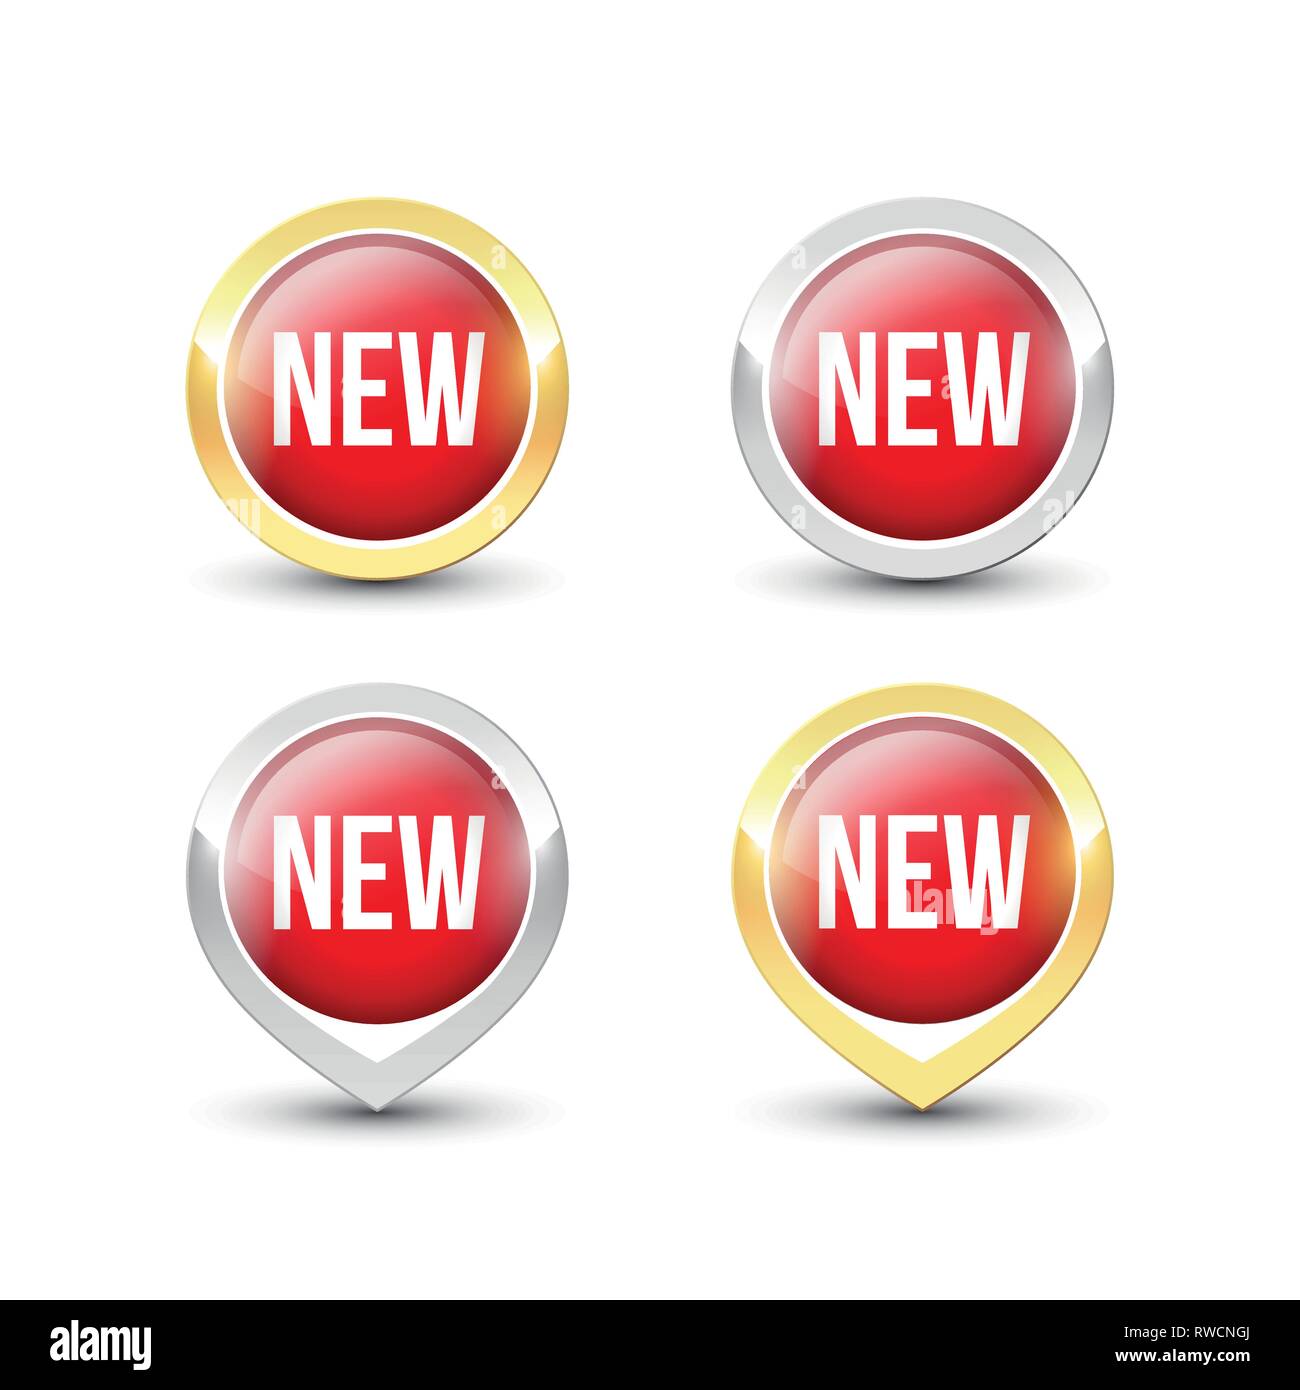 Nouveaux boutons rond rouge et des liens avec l'or et l'argent métallique frontière. Label Vector icons isolé sur fond blanc. Illustration de Vecteur